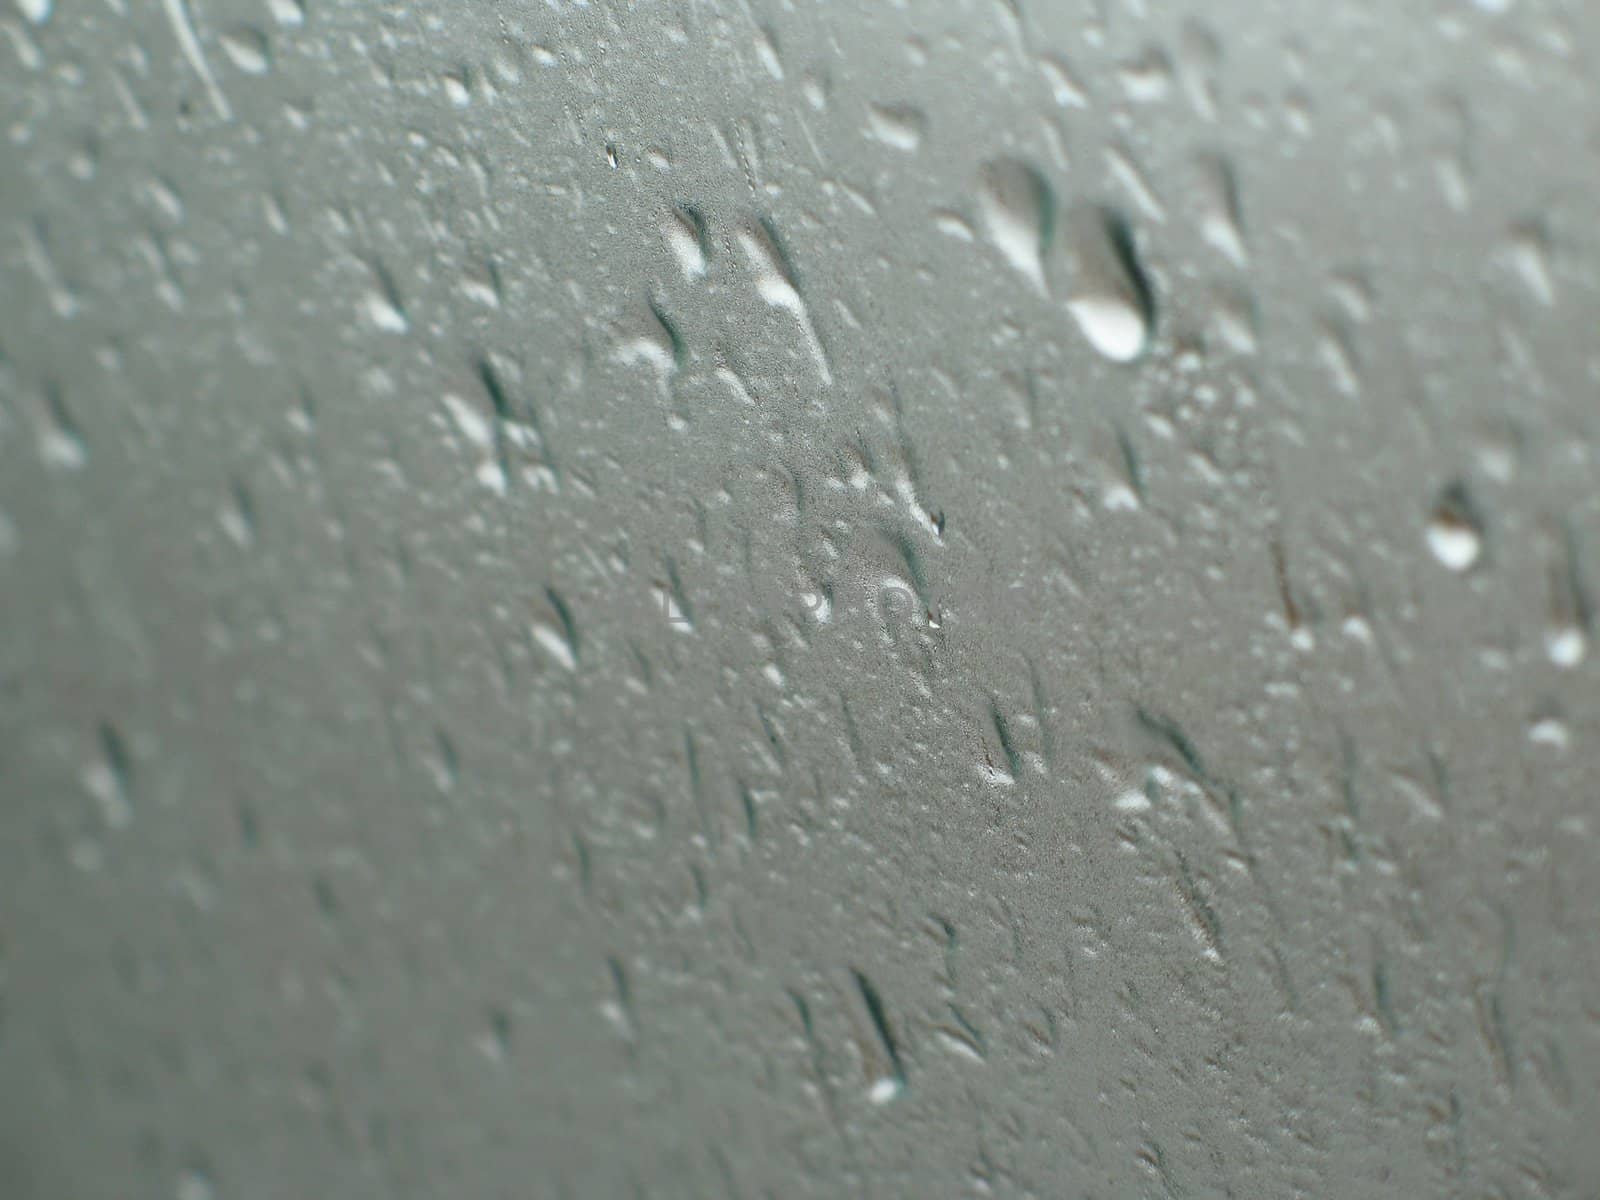 rain drops in a window by mmm